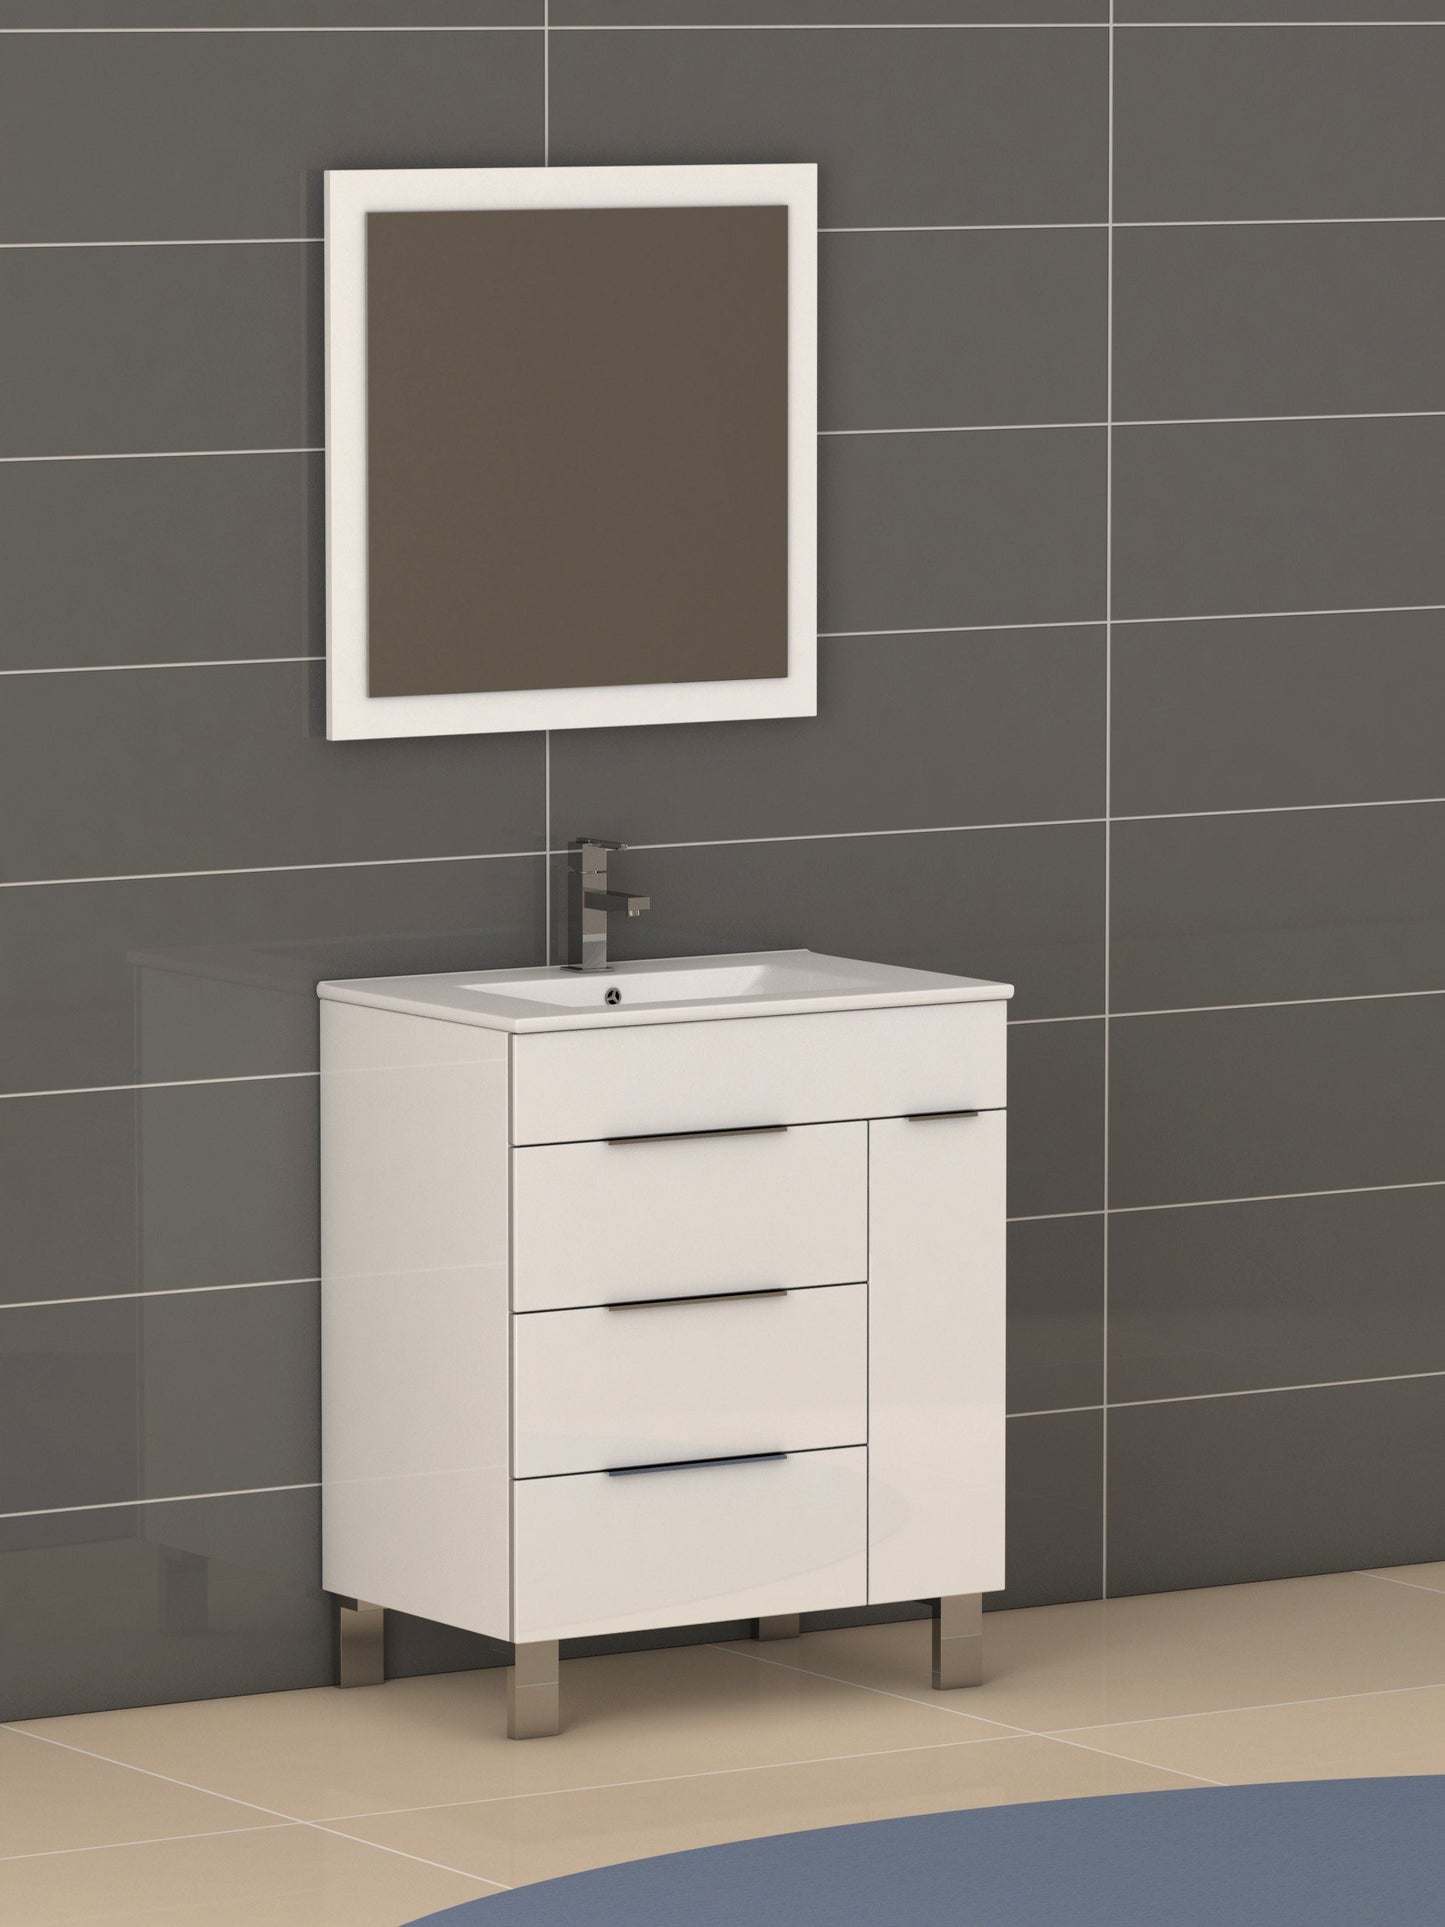 Eviva Geminis 28" Modern Bathroom Vanity with White Integrated Porcelain Sink - Luxe Bathroom Vanities Luxury Bathroom Fixtures Bathroom Furniture